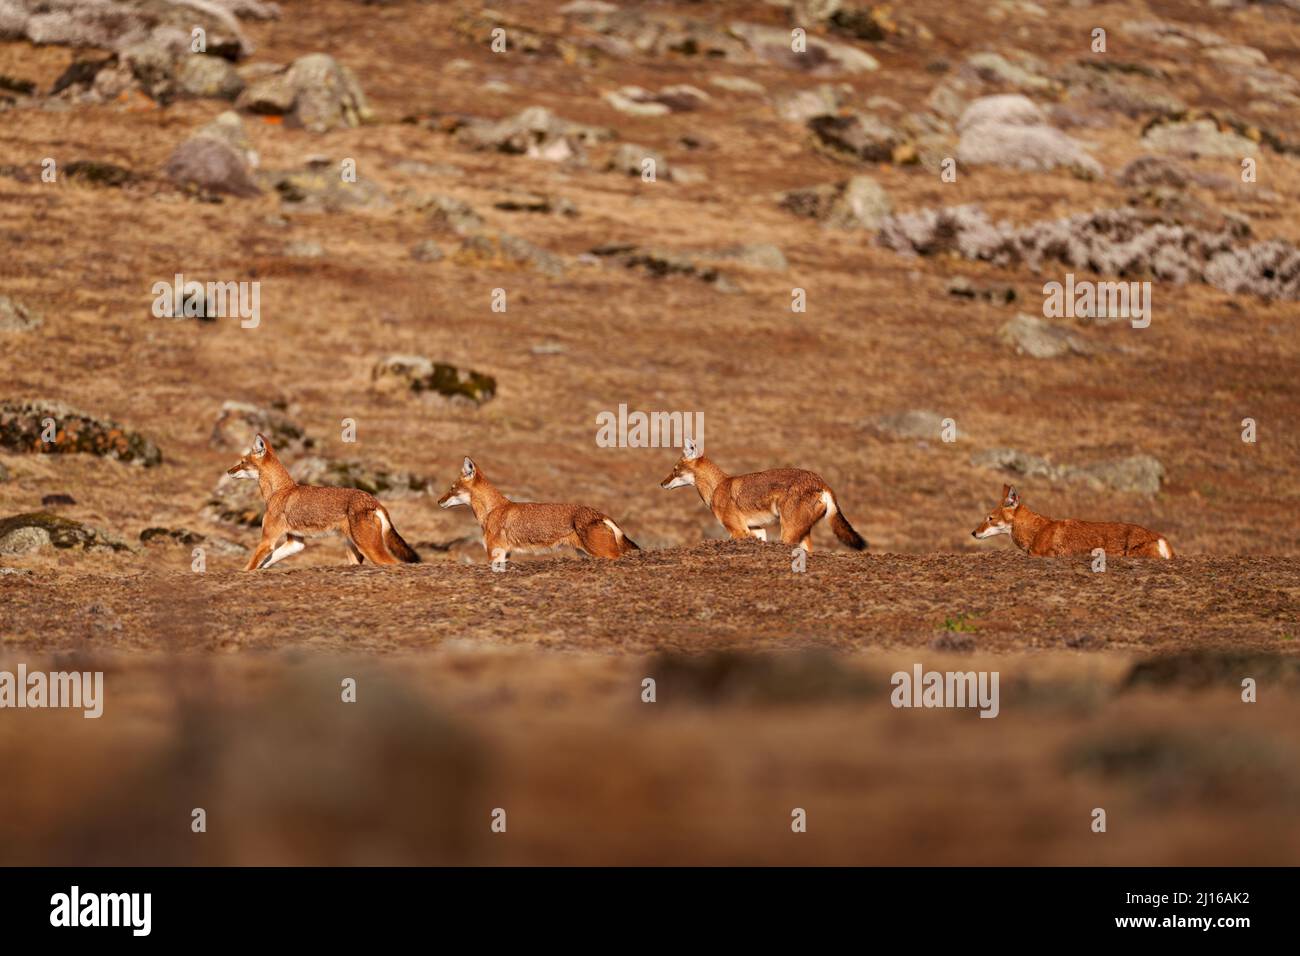 Äthiopischer Wolf, Canis simensis, Packgruppe in der Natur. Bale Mountains NP, in Äthiopien. Seltenes endemisches Tier aus Ostafrika. Wildtiere Natur aus E Stockfoto